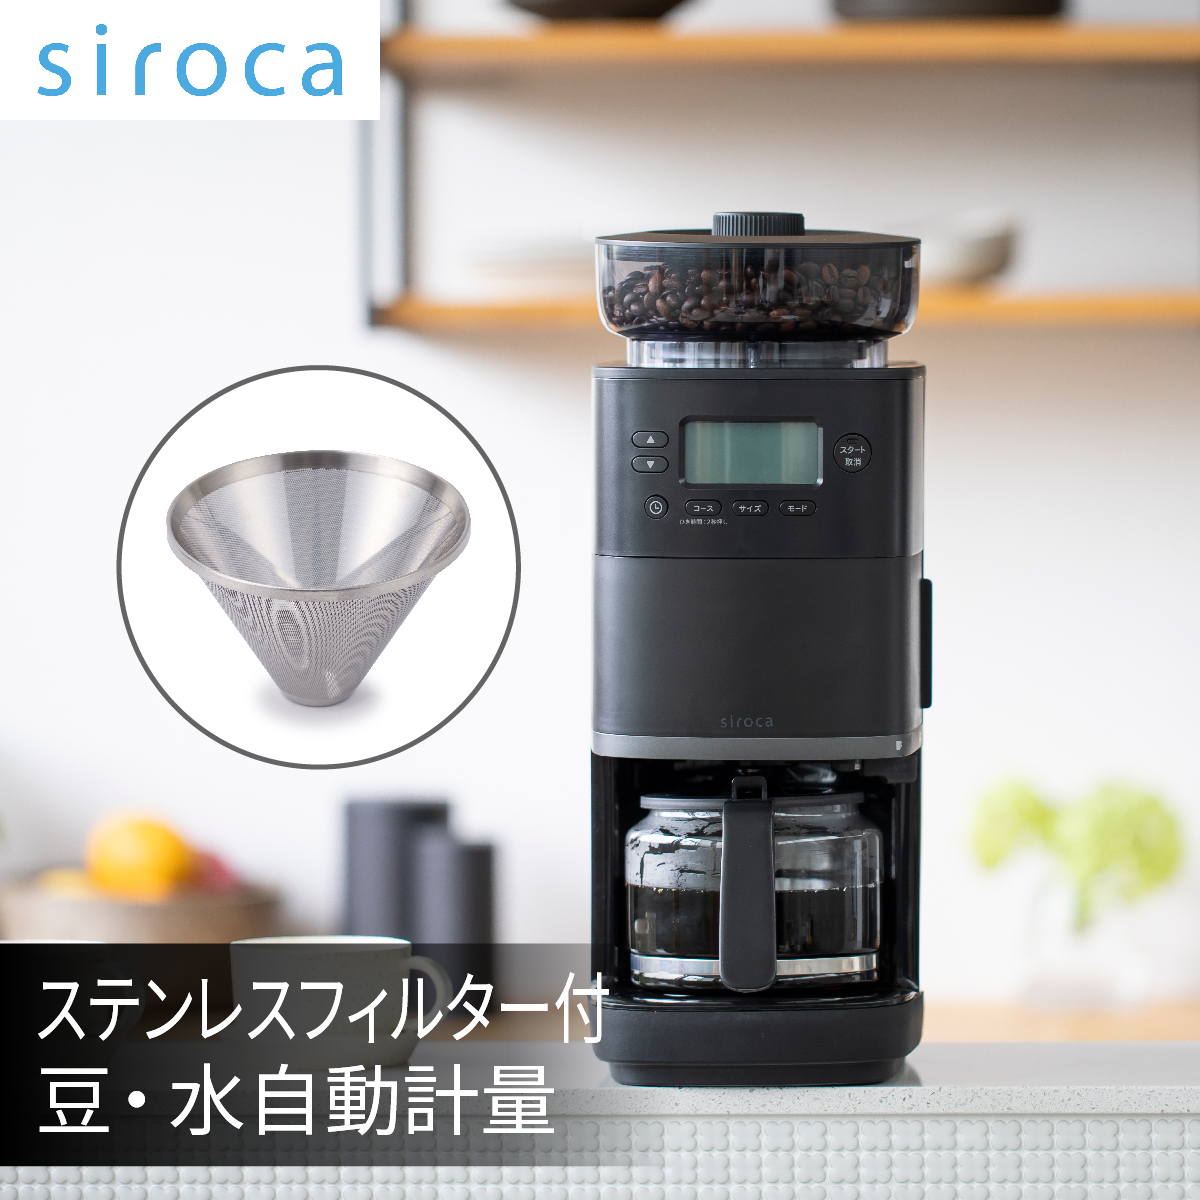 siroca コーン式全自動コーヒーメーカー カフェばこPRO 全自動 ミル付き 最大6杯 ブラック